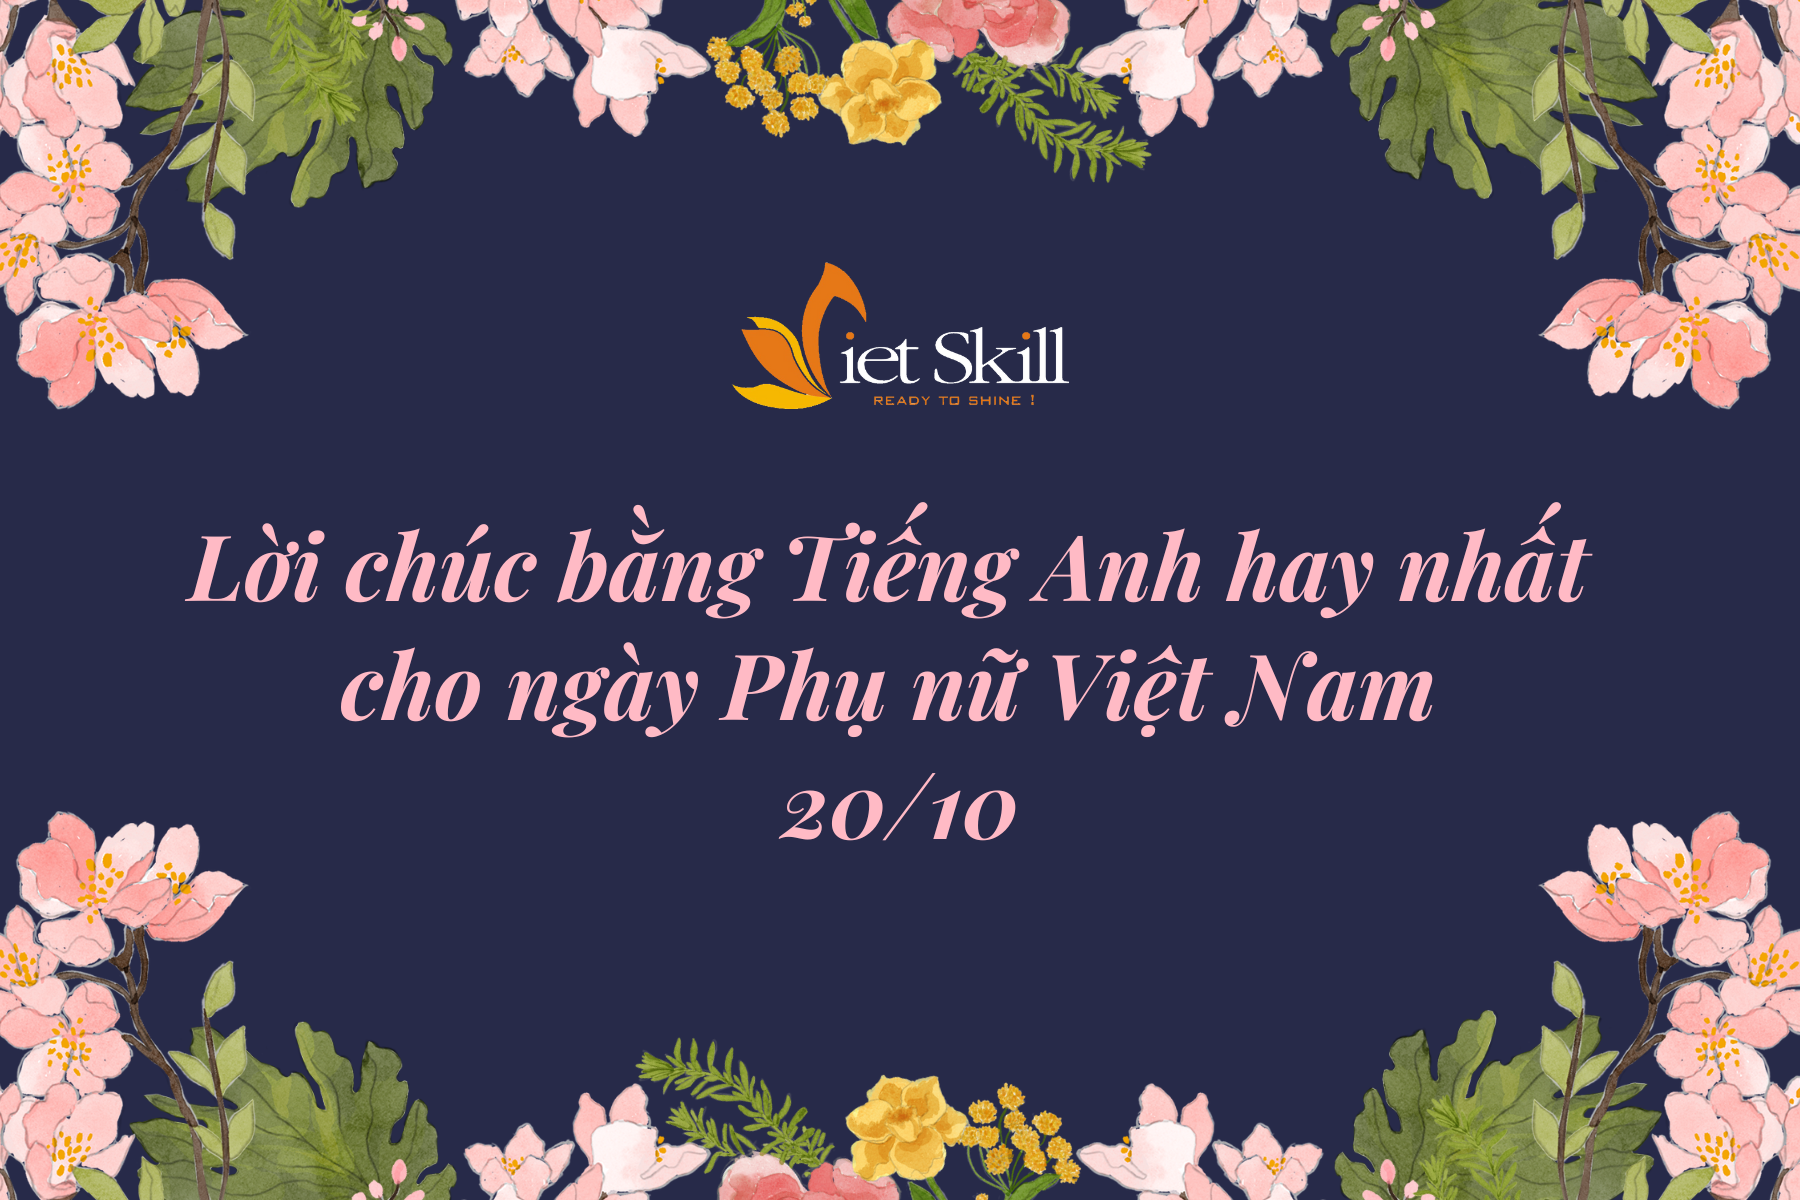 Lời chúc bằng Tiếng Anh hay nhất chào mừng ngày Phụ nữ Việt Nam 20.10